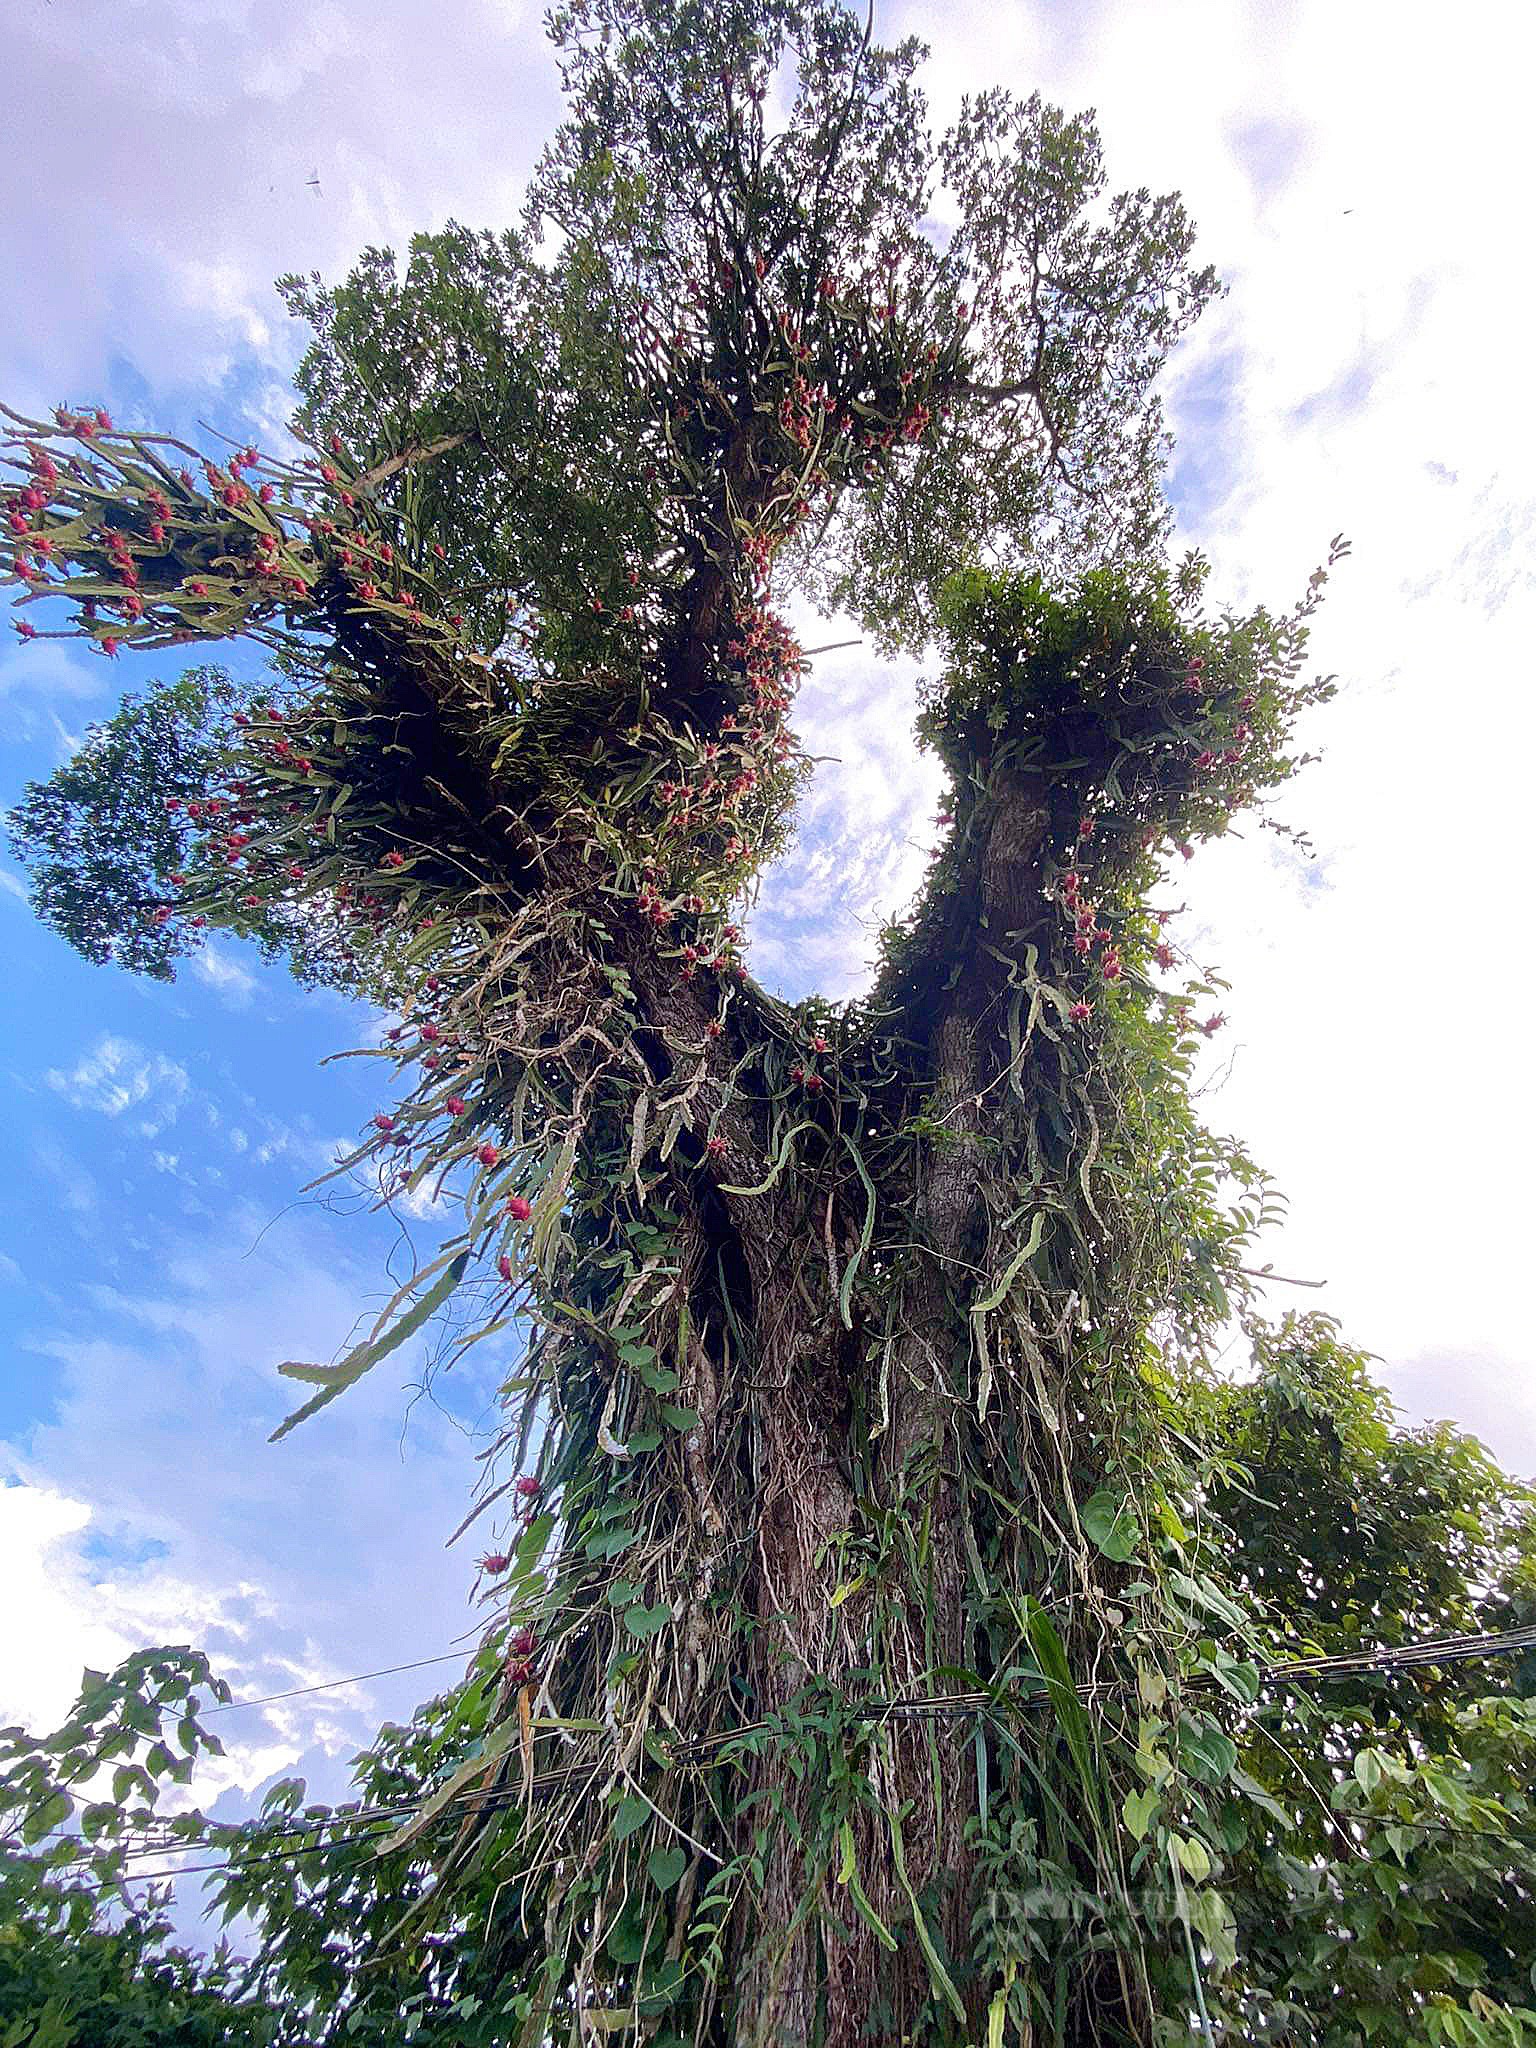 Kỳ lạ một cây cao hơn 20m, hình dạng giống con rồng có râu đang bay trên trời ở Đắk Lắk - Ảnh 1.